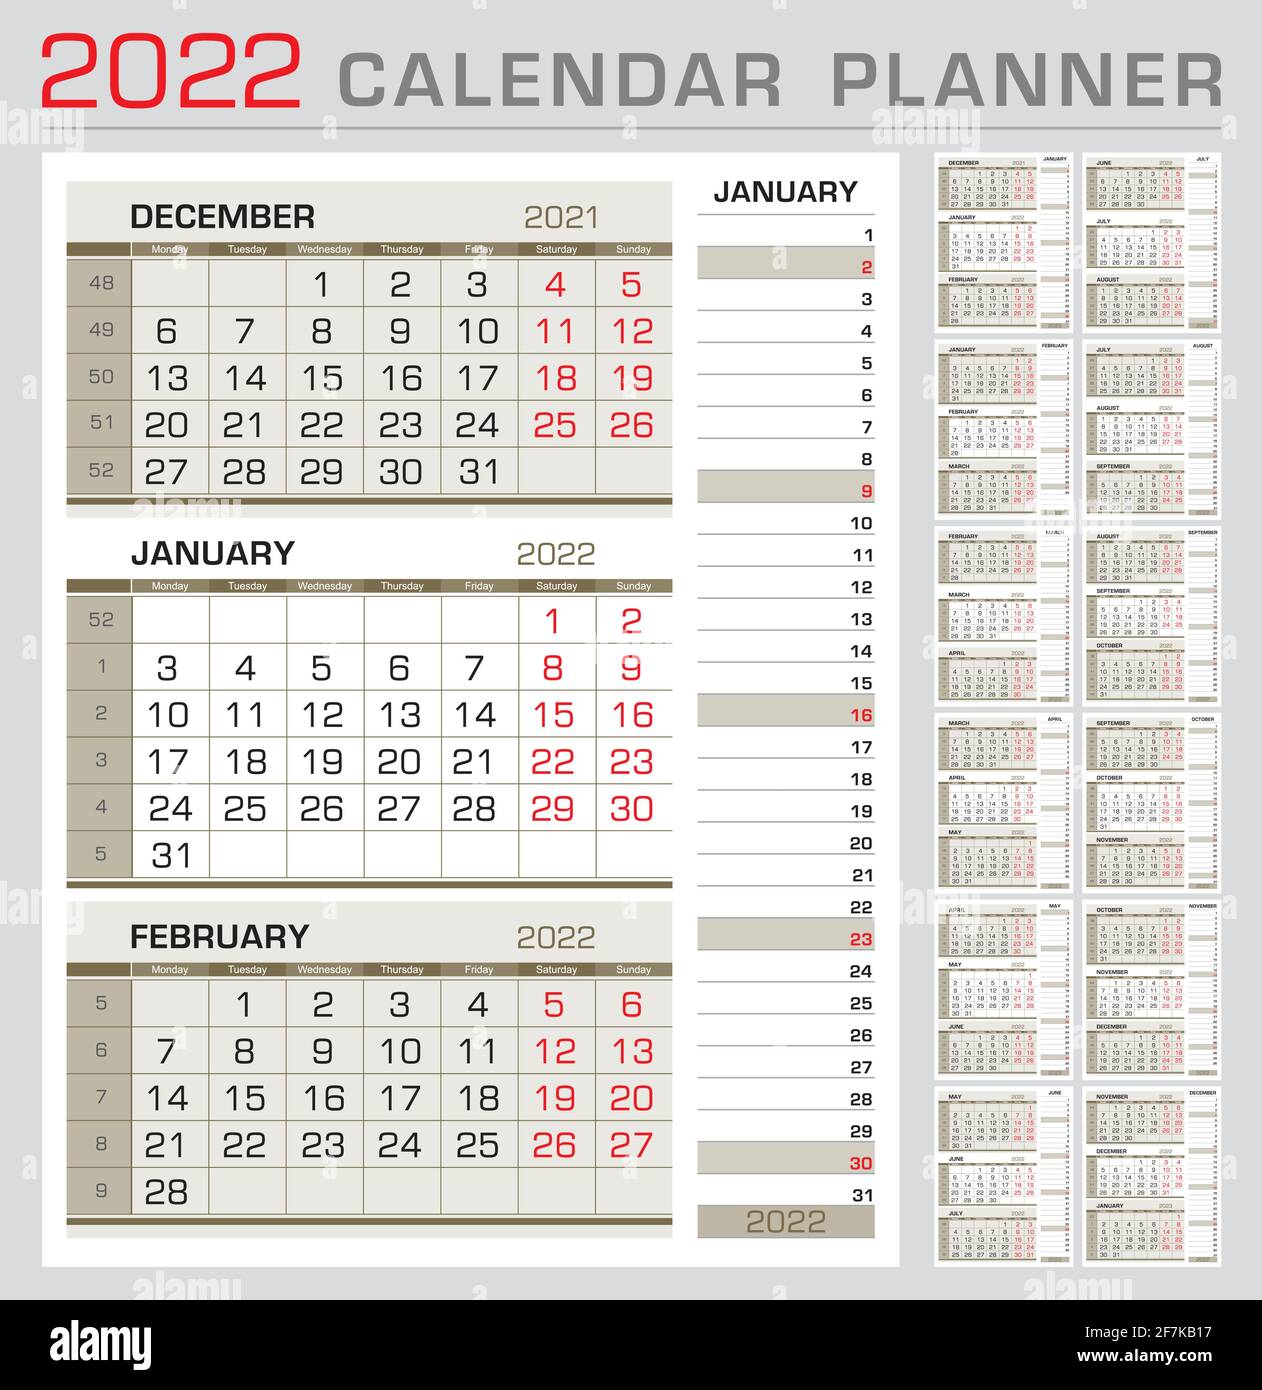 Modèle de calendrier 2022. Début de la semaine à partir du lundi. calendrier de 3 mois à la page, avec le calendrier à bande droite du mois d'actualité. Prêt pour l'impression Illustration de Vecteur